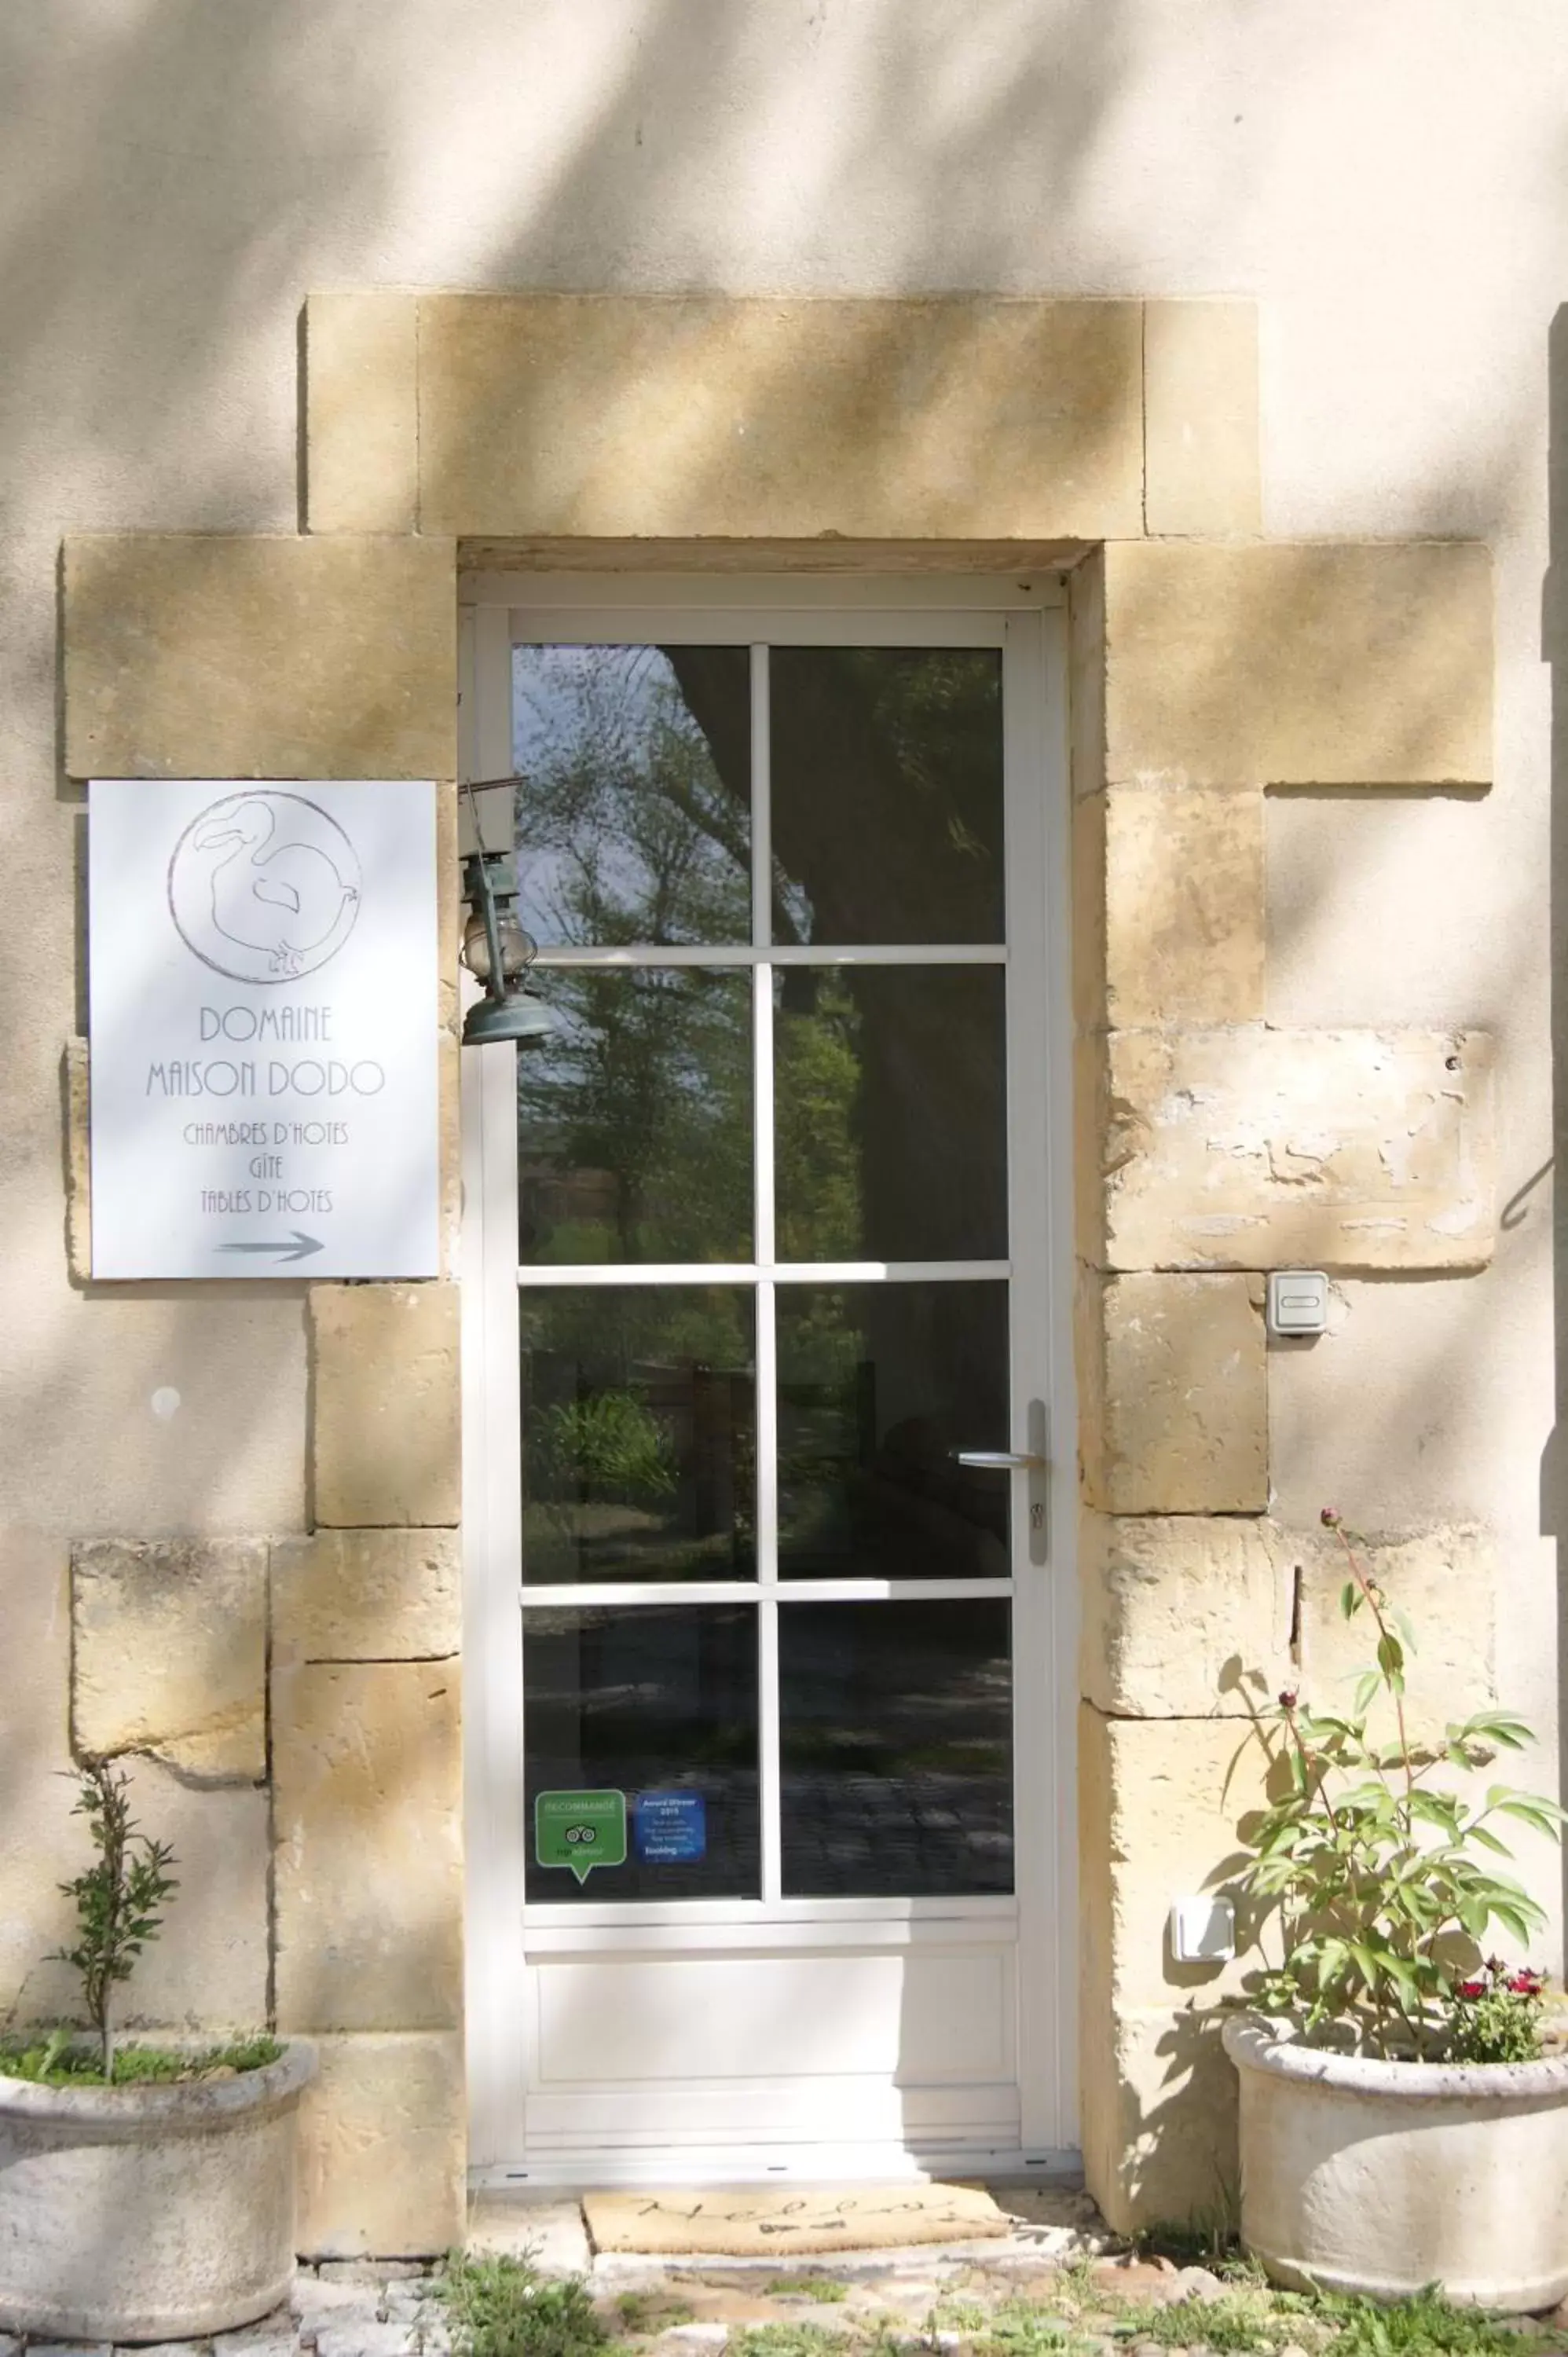 Property logo or sign, Facade/Entrance in Domaine Maison Dodo